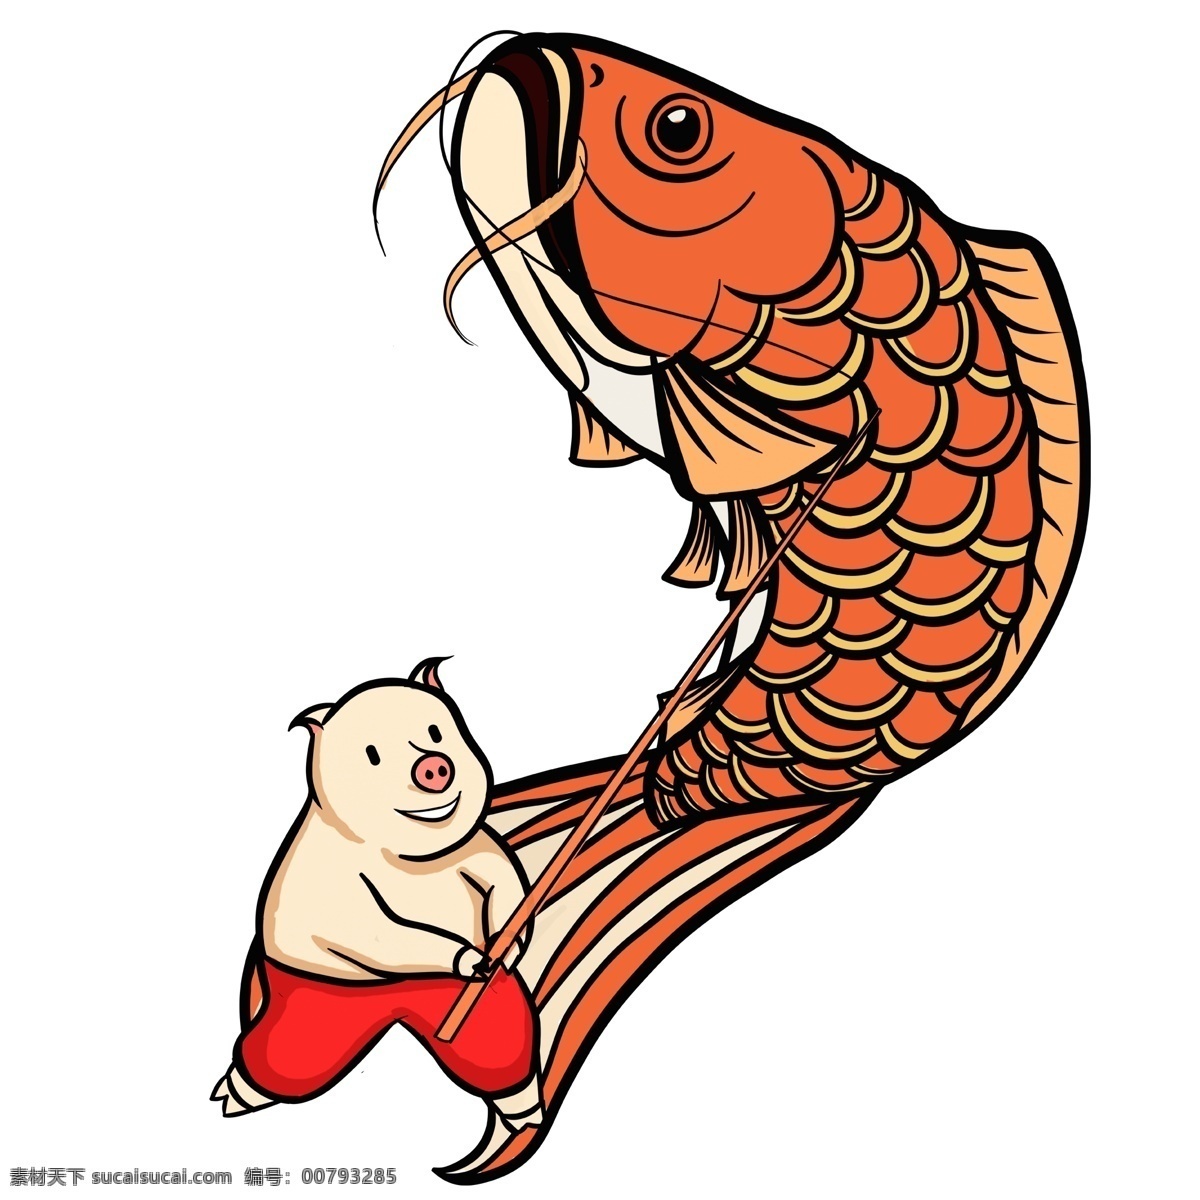 小 猪 钓鱼 彩绘 春节 元素 卡通 创意 锦鲤 插画设计 过年 小猪 春节元素 新年